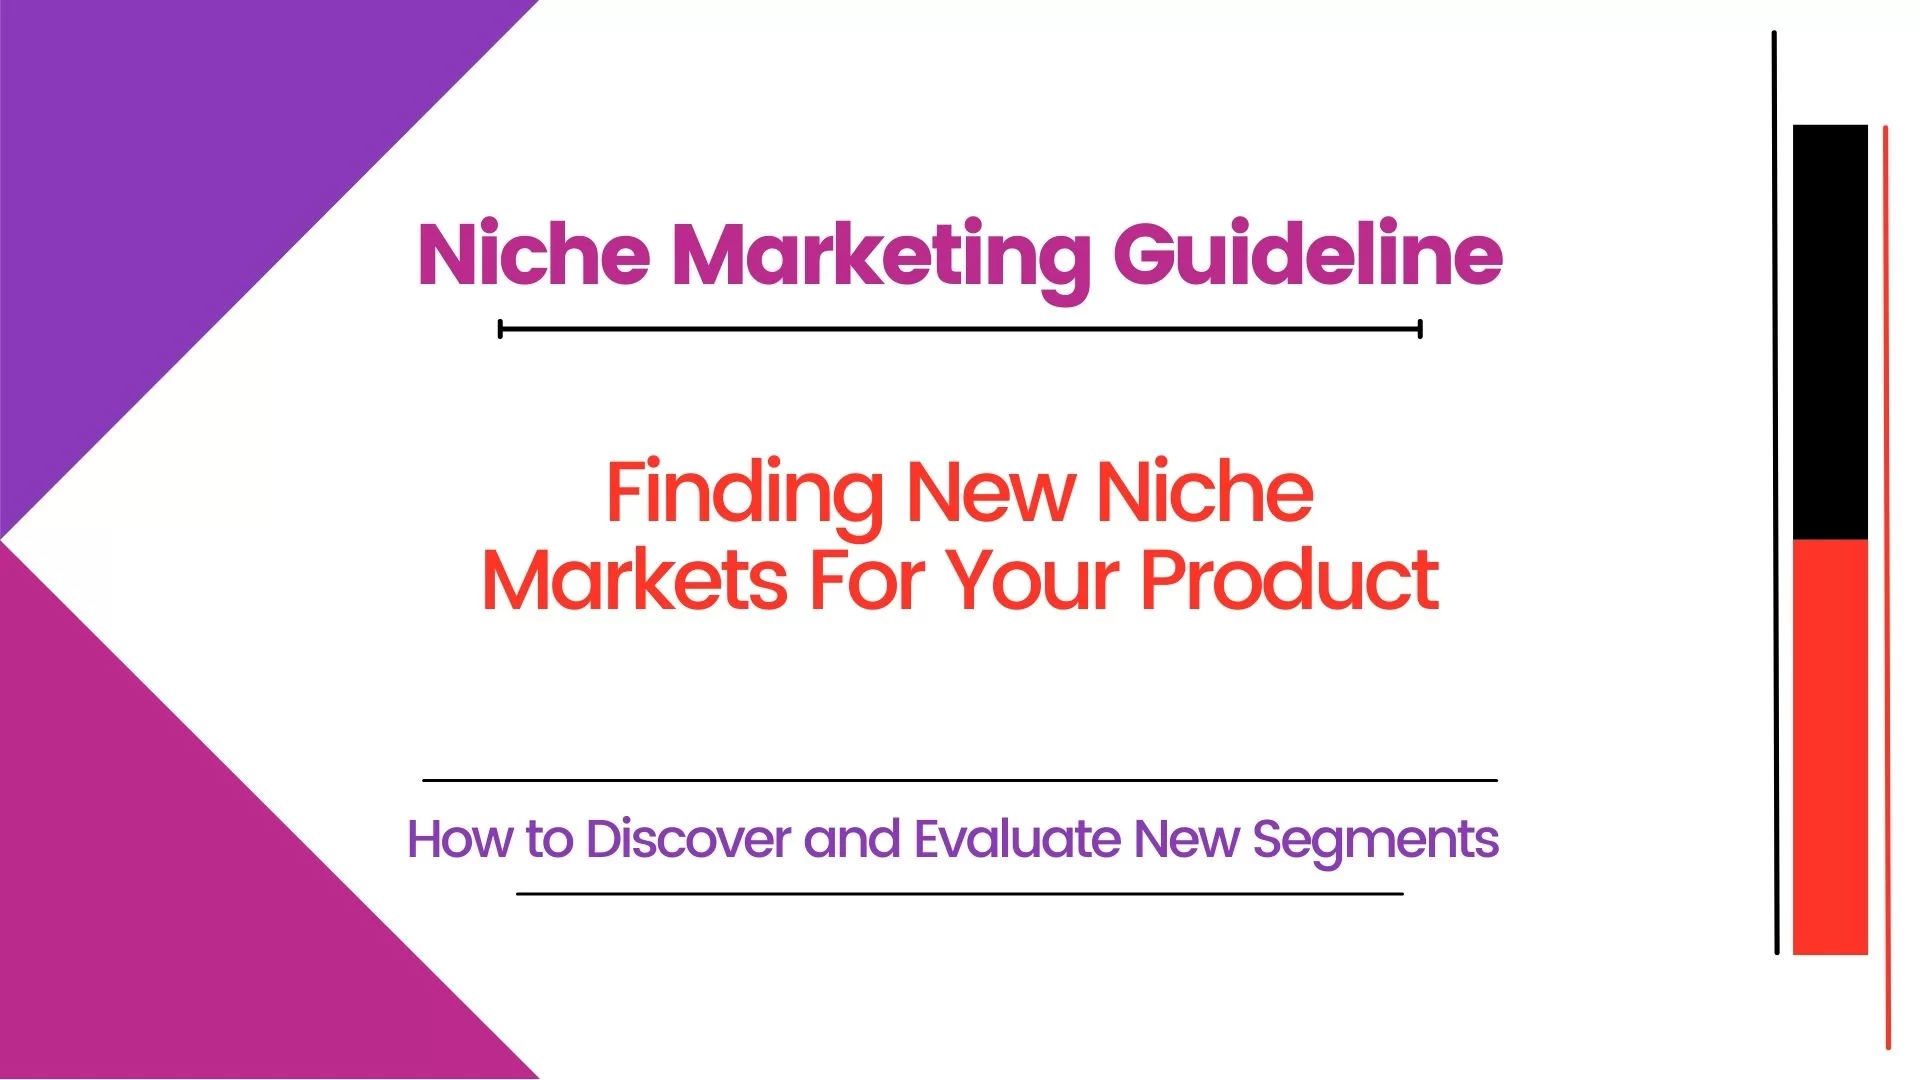 What Is Niche Marketing?